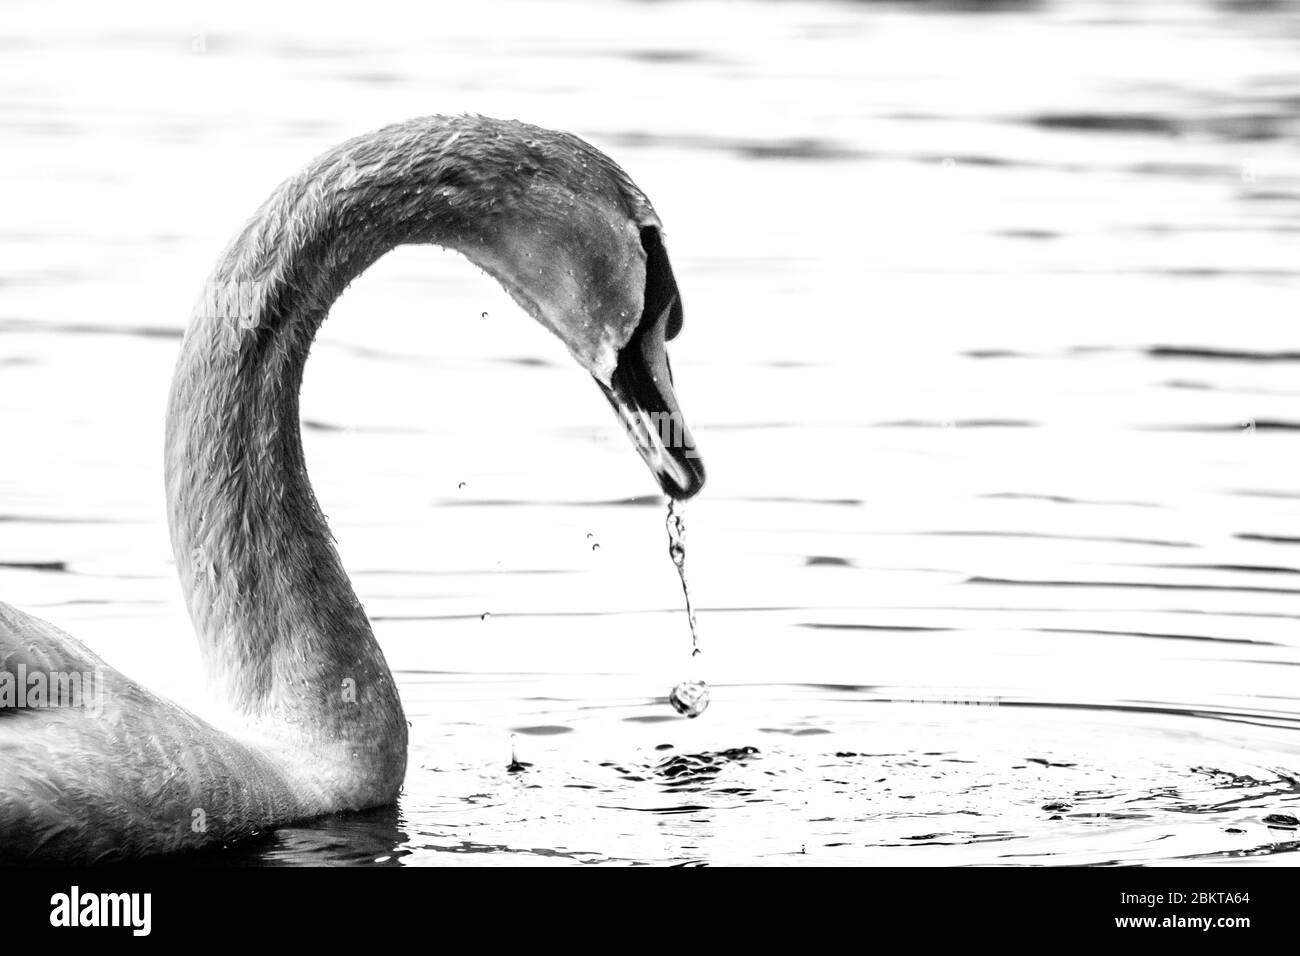 Imagen en blanco y negro de un cisne Foto de stock